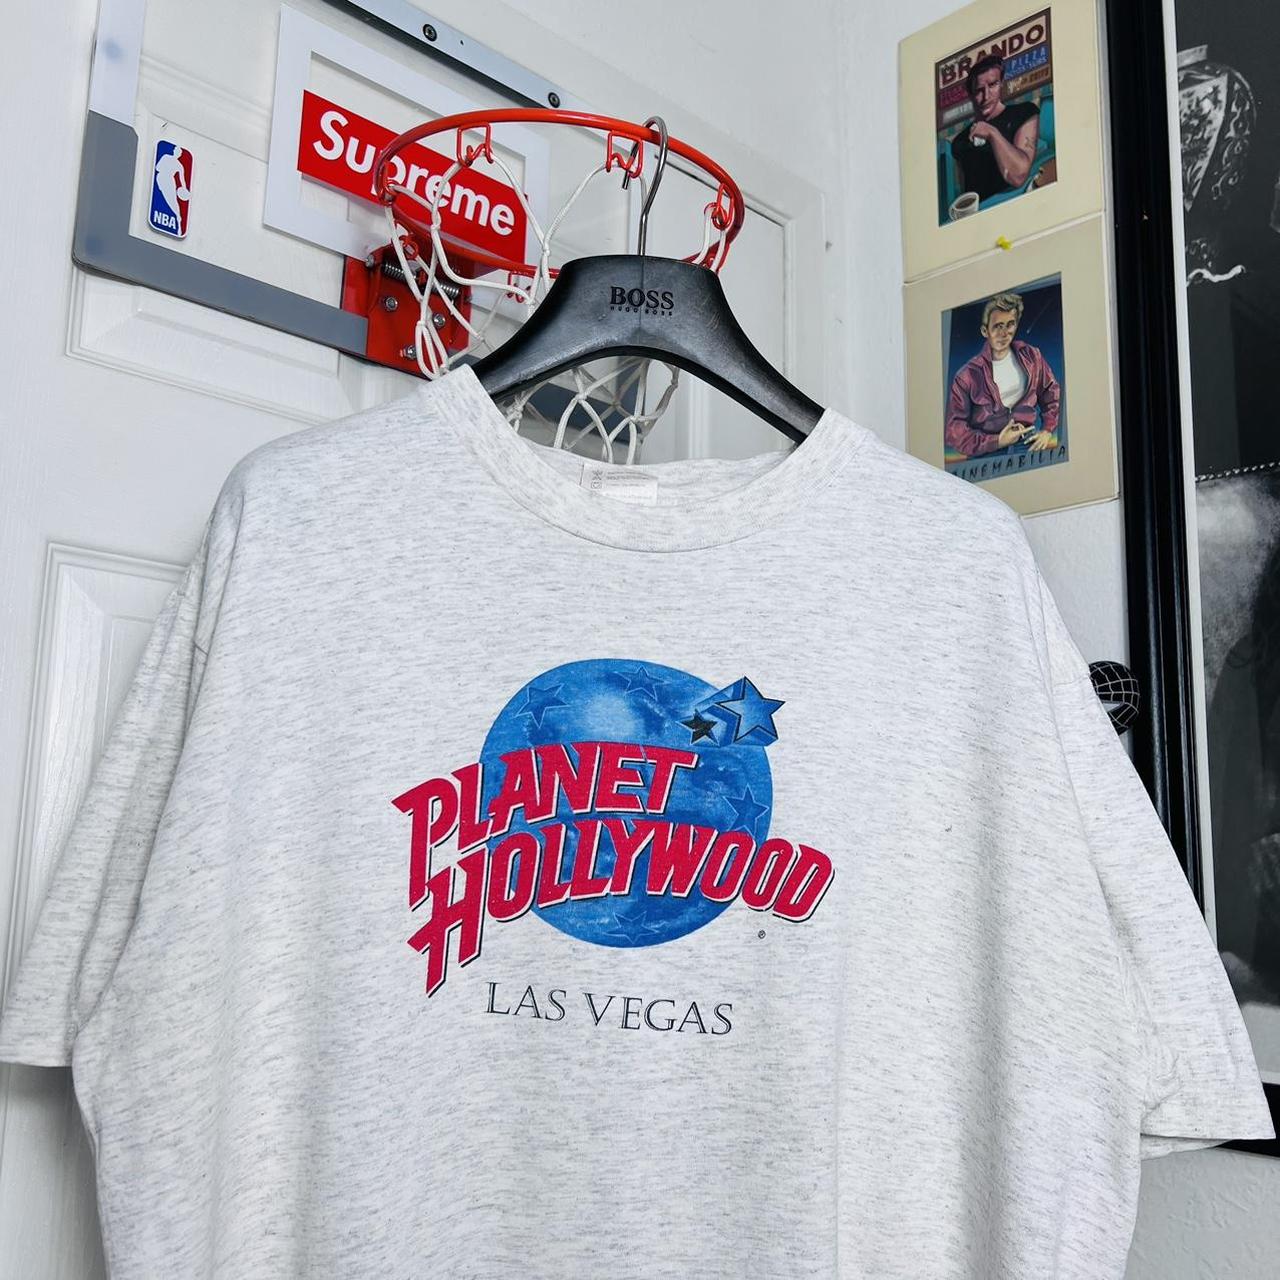 vintage san francisco giants Shirt 1990s Large All - Depop